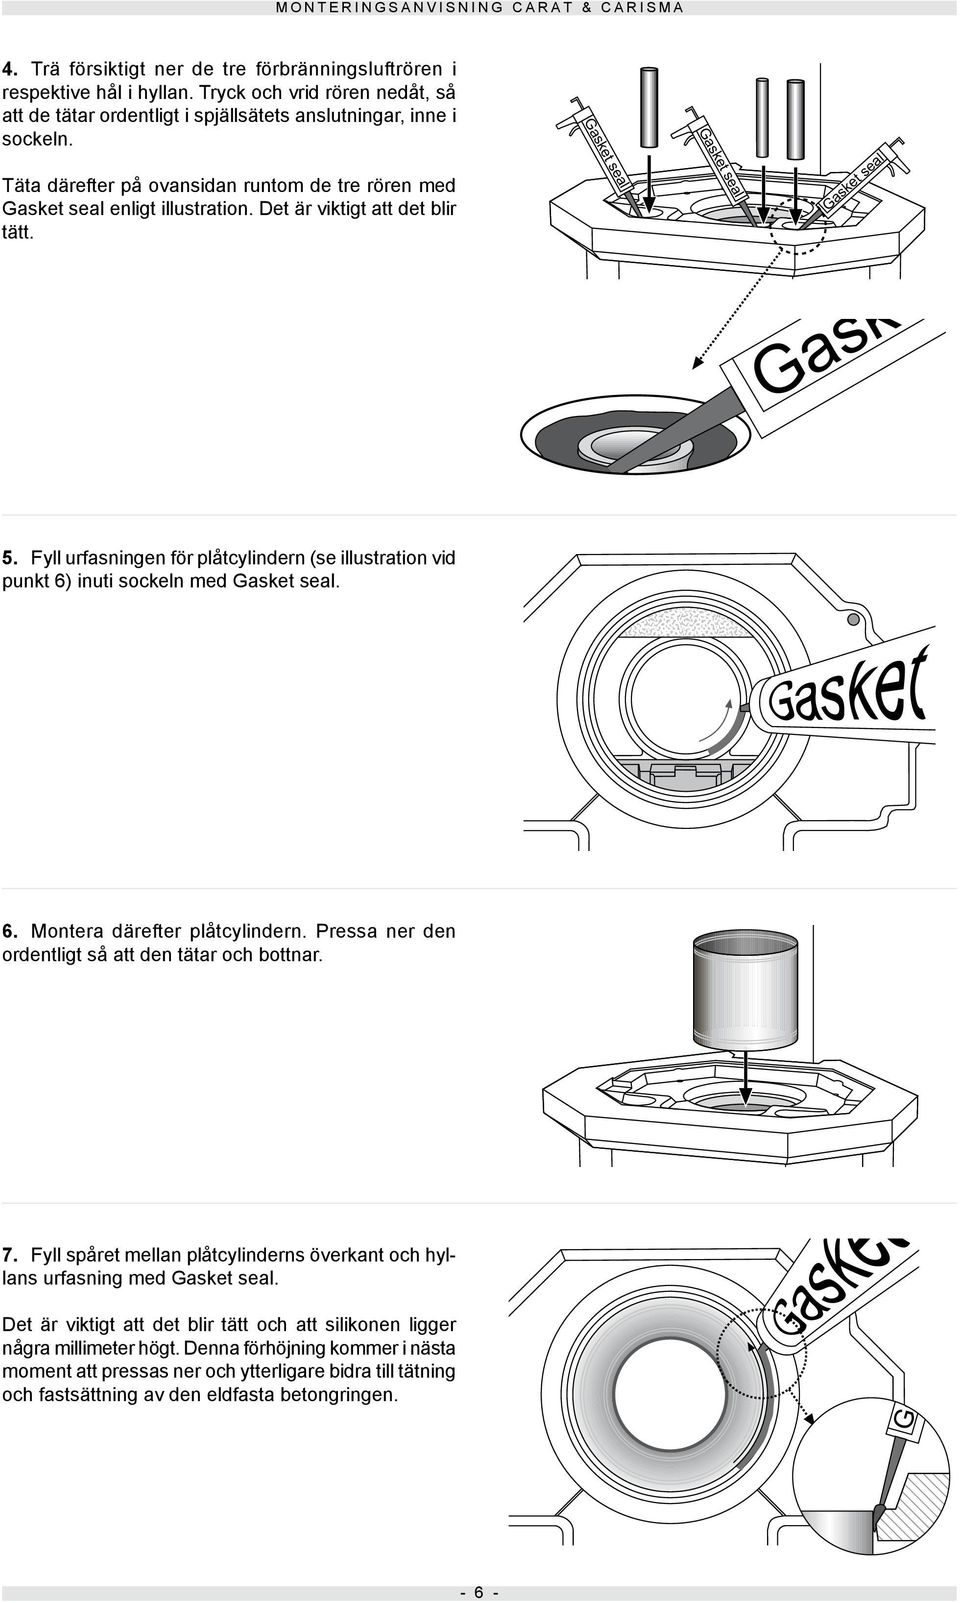 Fyll urfasningen för plåtcylindern (se illustration vid punkt 6) inuti sockeln med Gasket seal. 6. Montera därefter plåtcylindern. Pressa ner den ordentligt så att den tätar och bottnar. 7.